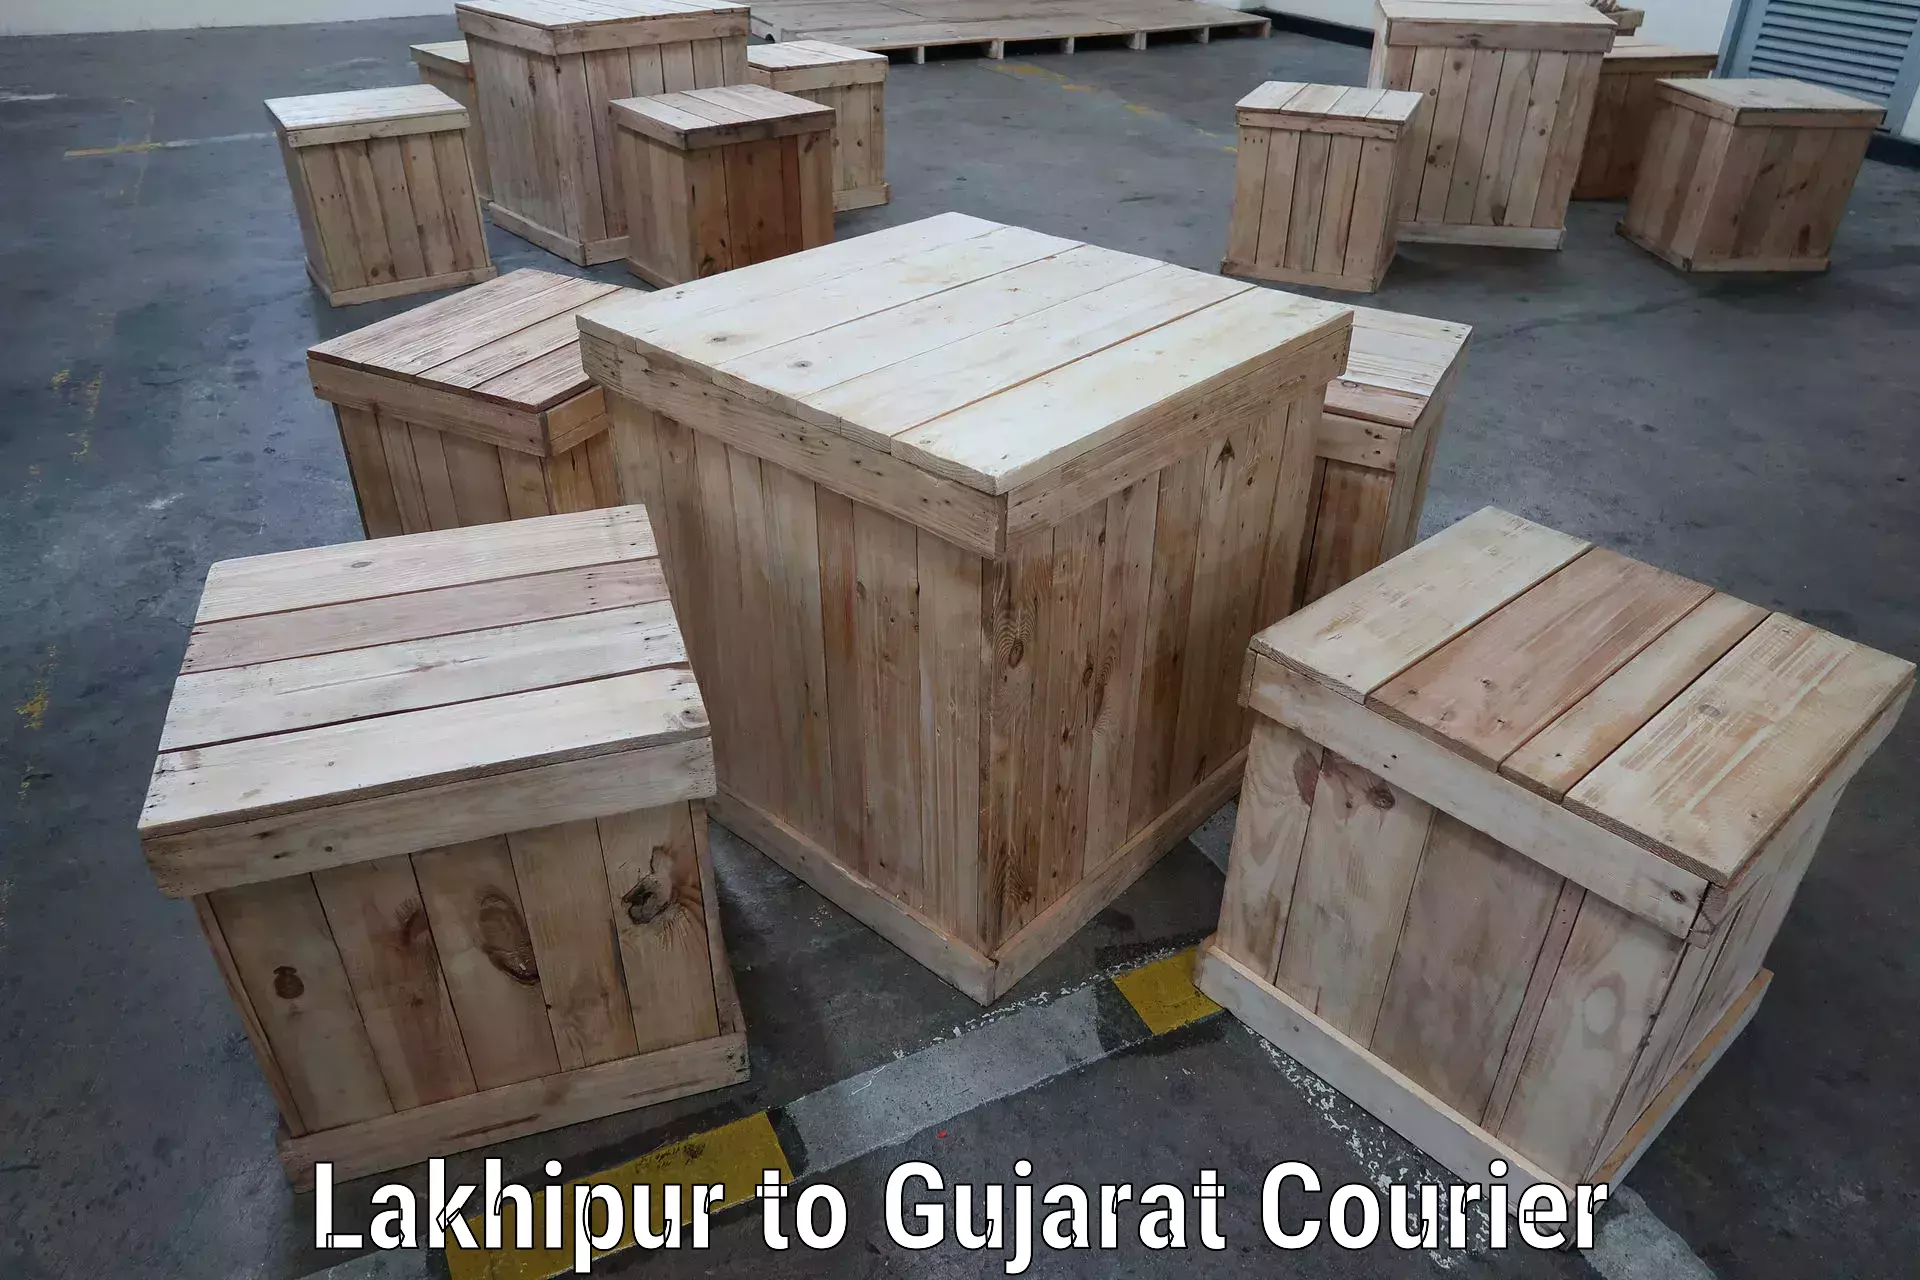 Modern delivery methods Lakhipur to Kadodara